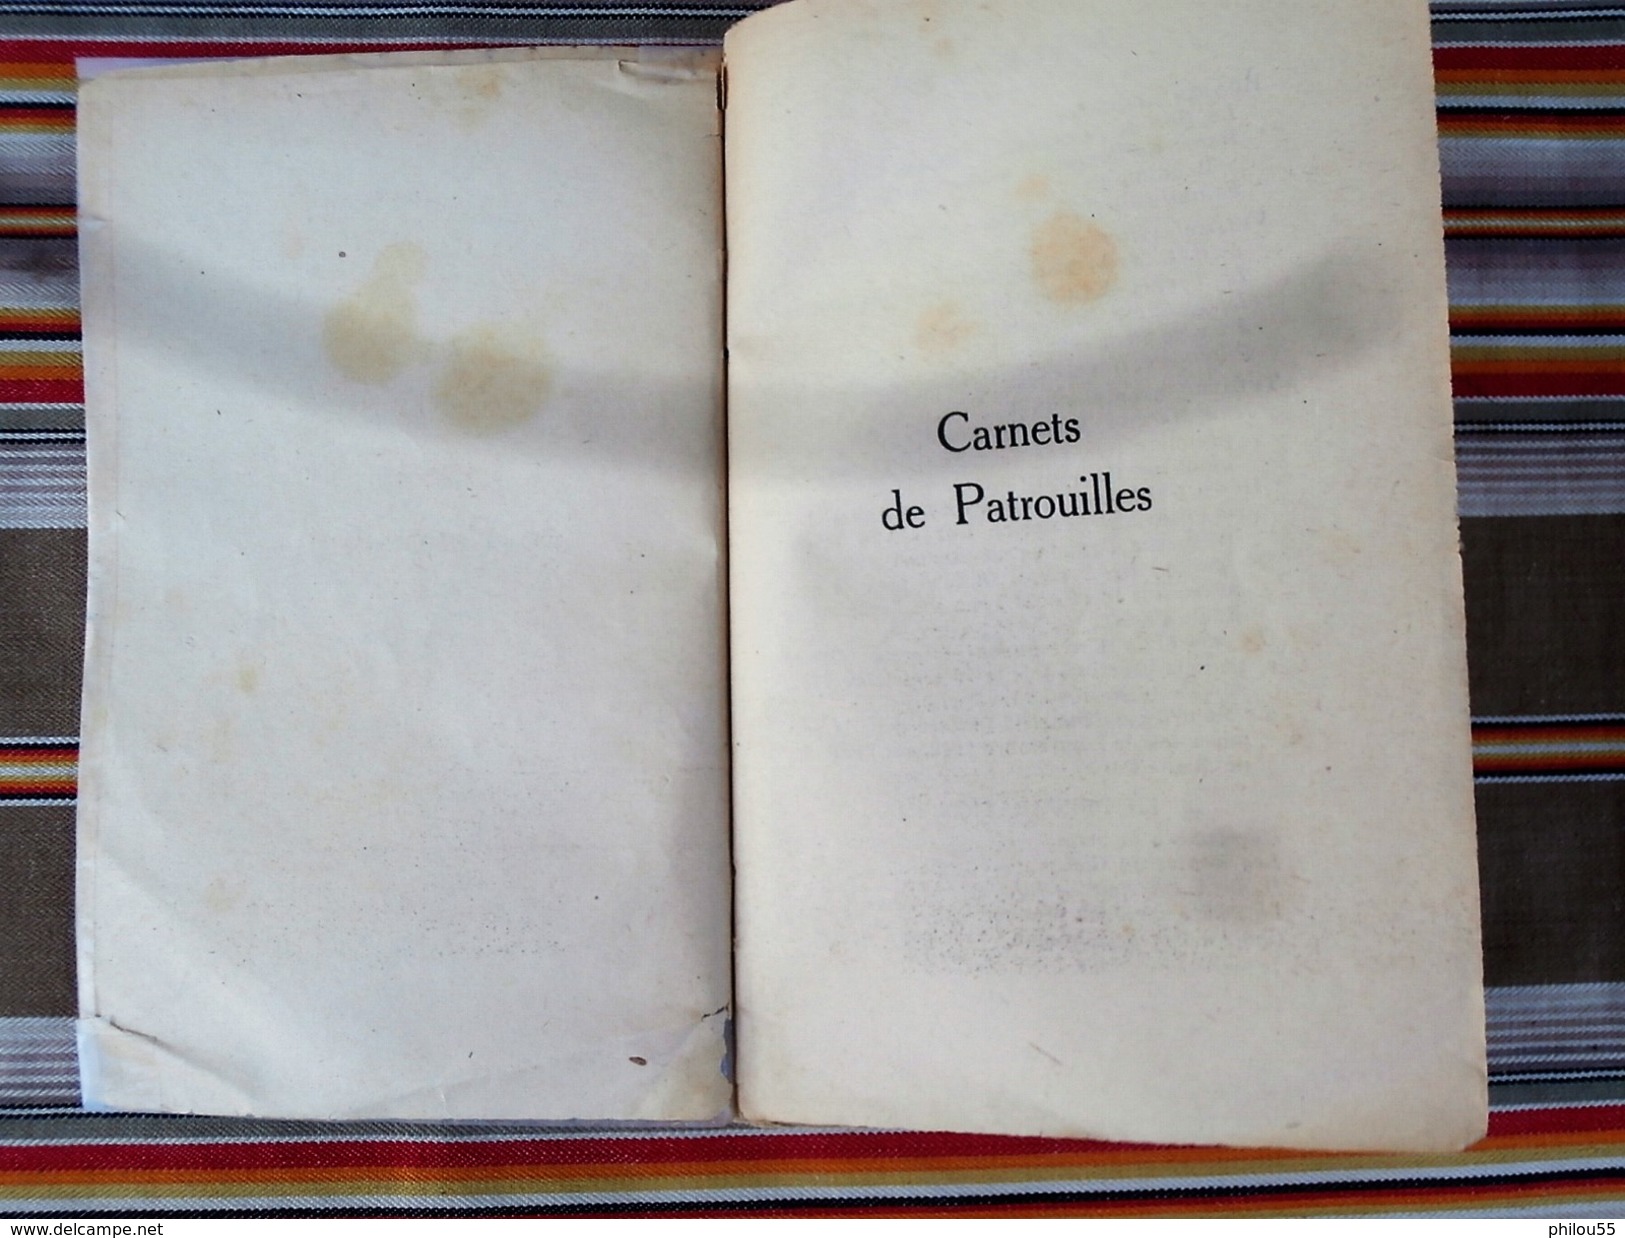 Livre "CARNET DE PATROUILLE " par Roland TESSIER   Editions Baudiniere